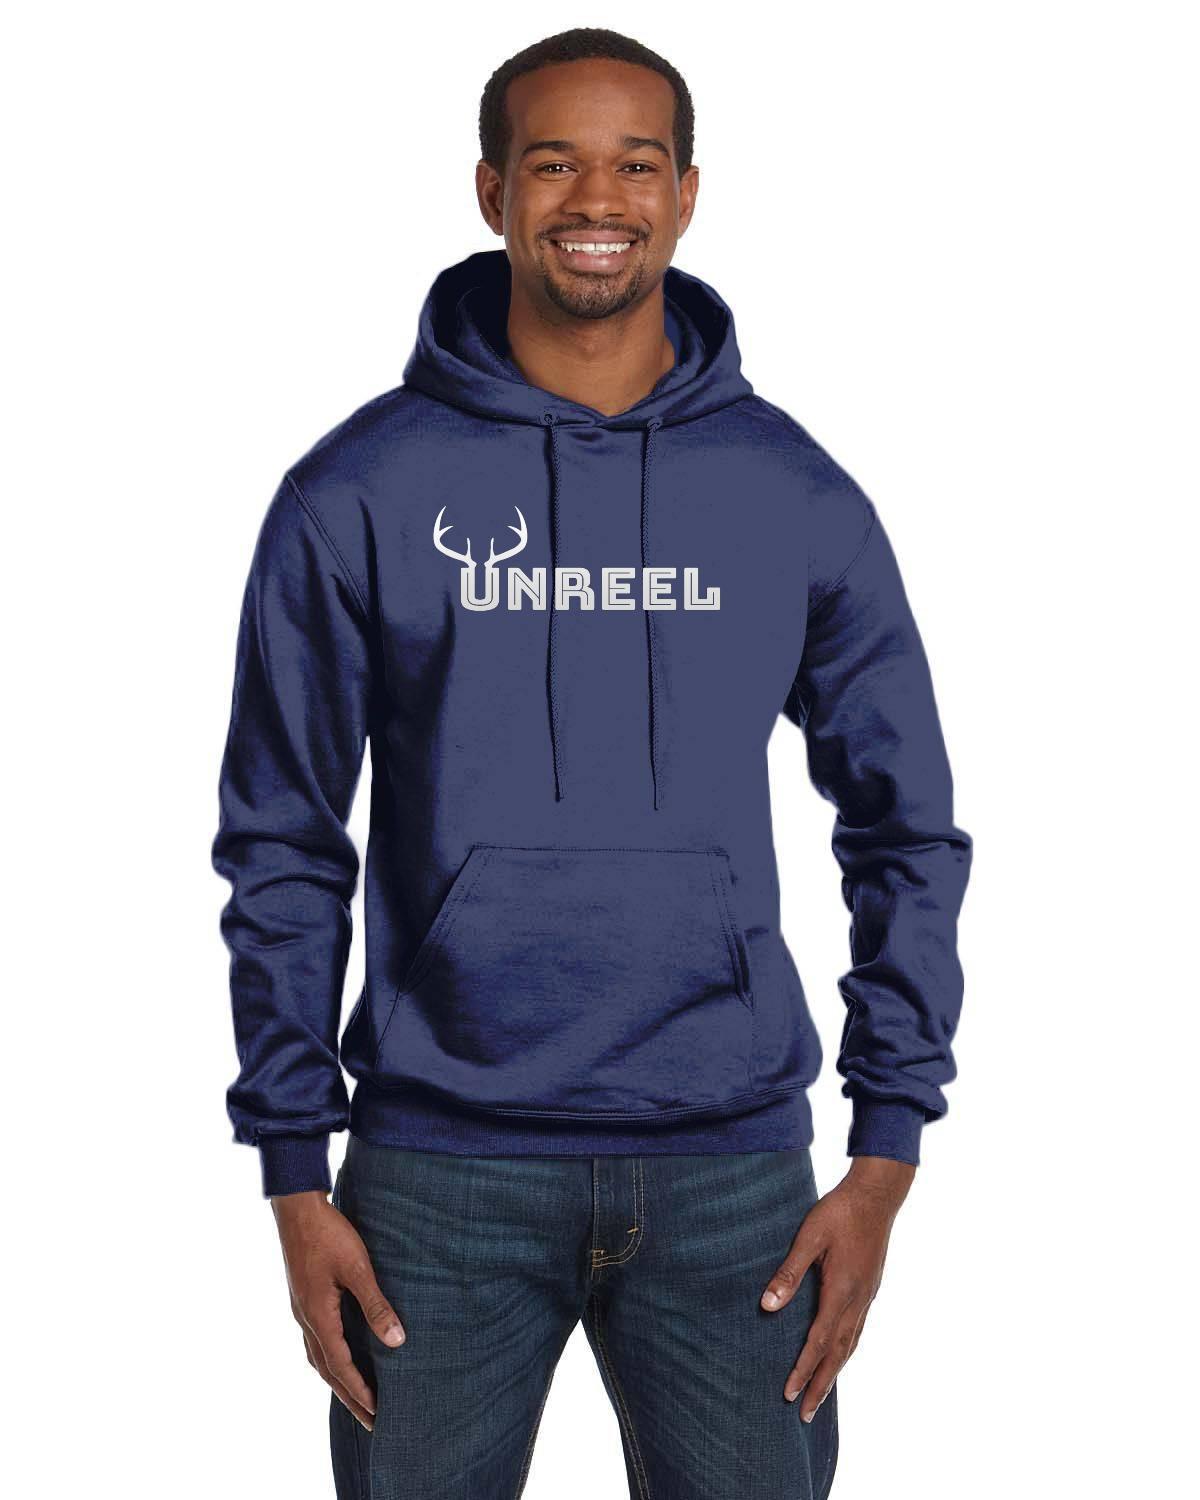 Champion Unreel Outdoors hunting hoodie